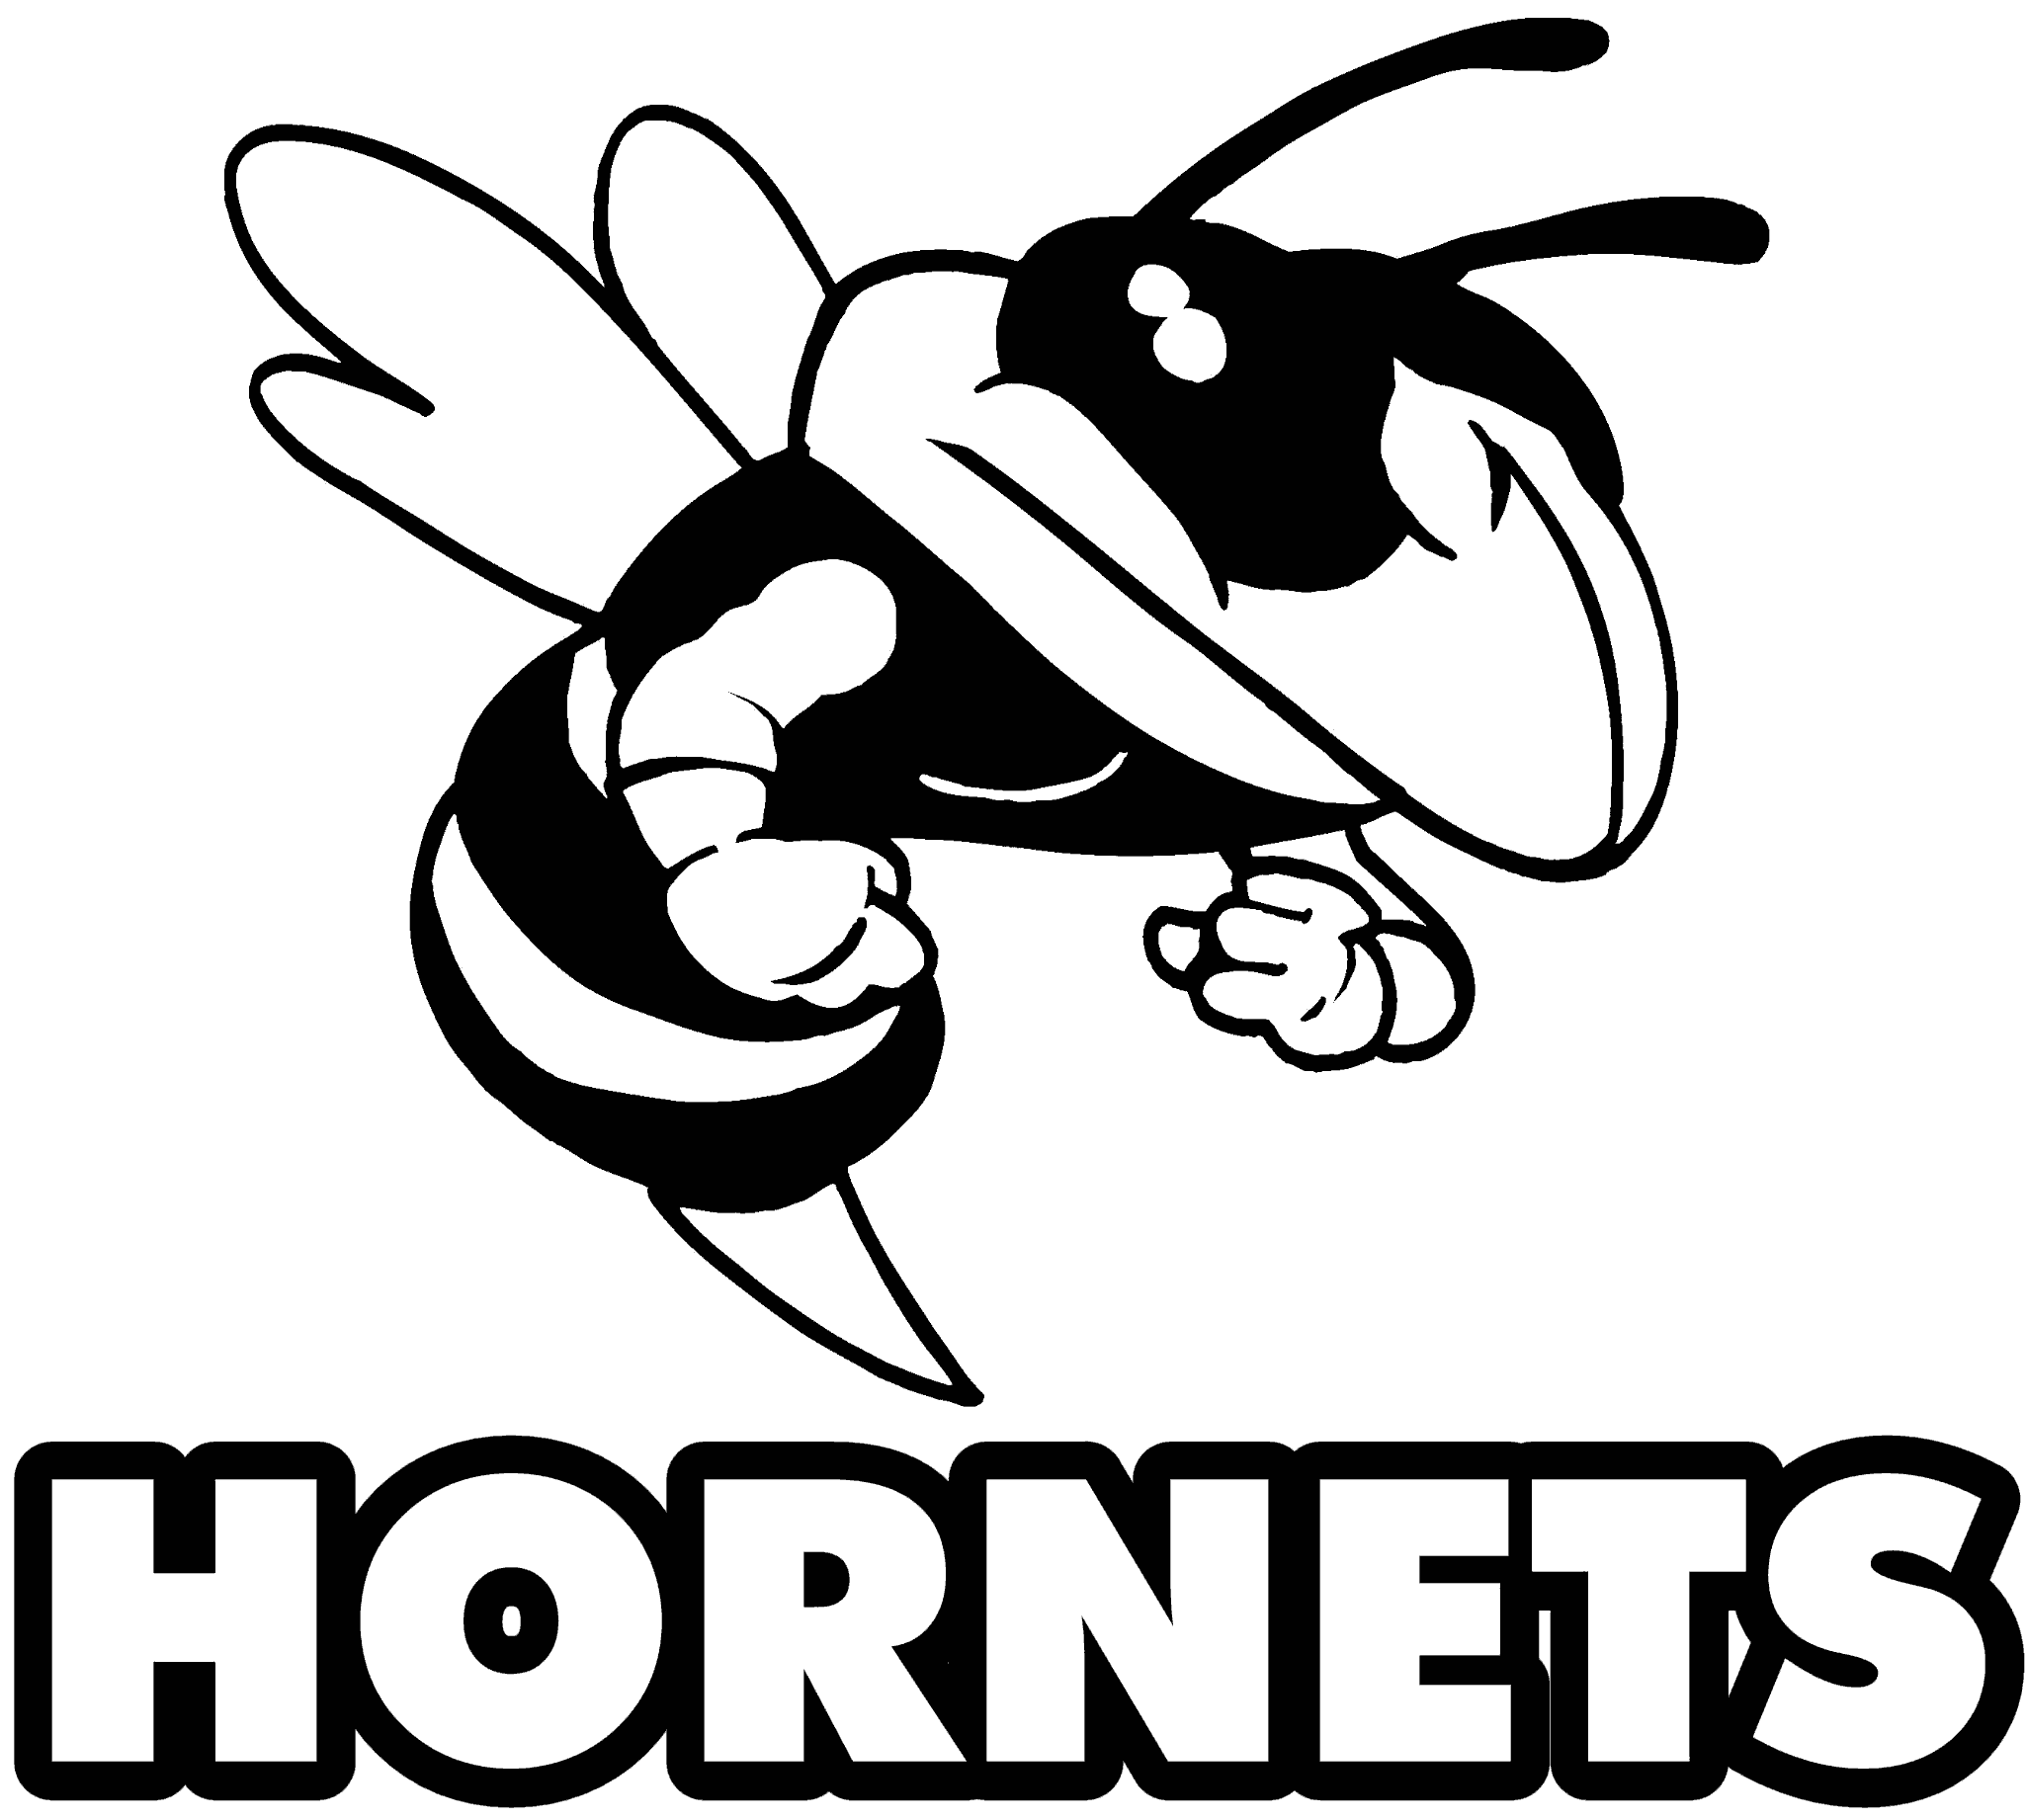 hornets nest clipart - photo #45